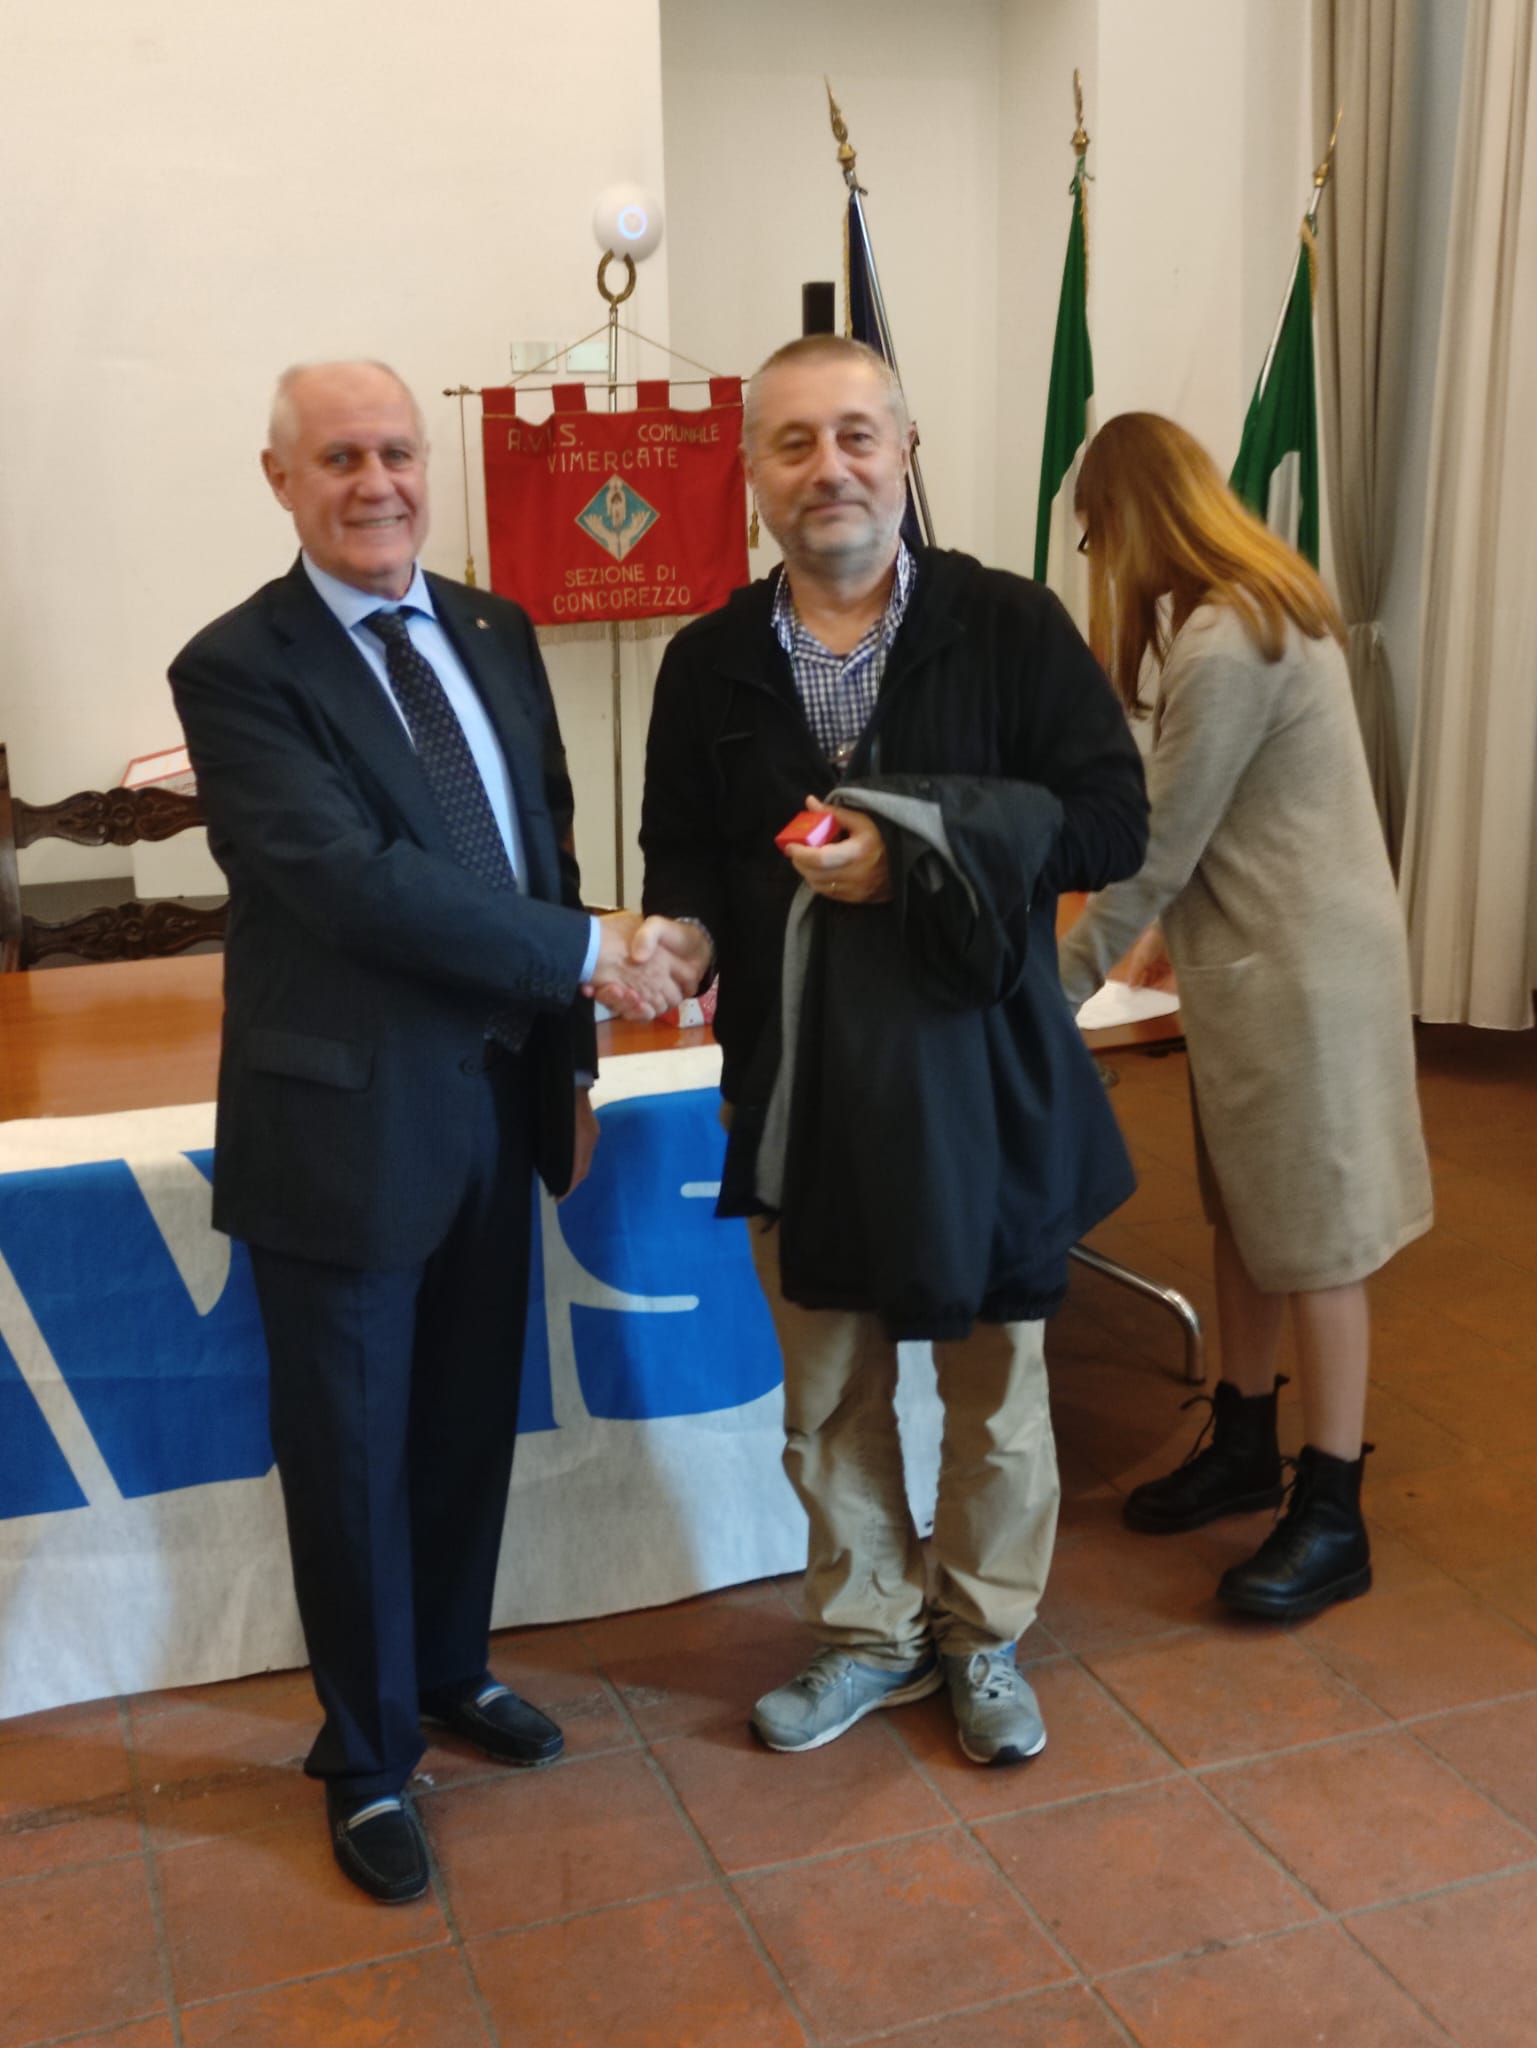 Concorezzo premiazioni donatori Avis  a sinistra presidente Avis Vimercate Fausto Galbiati